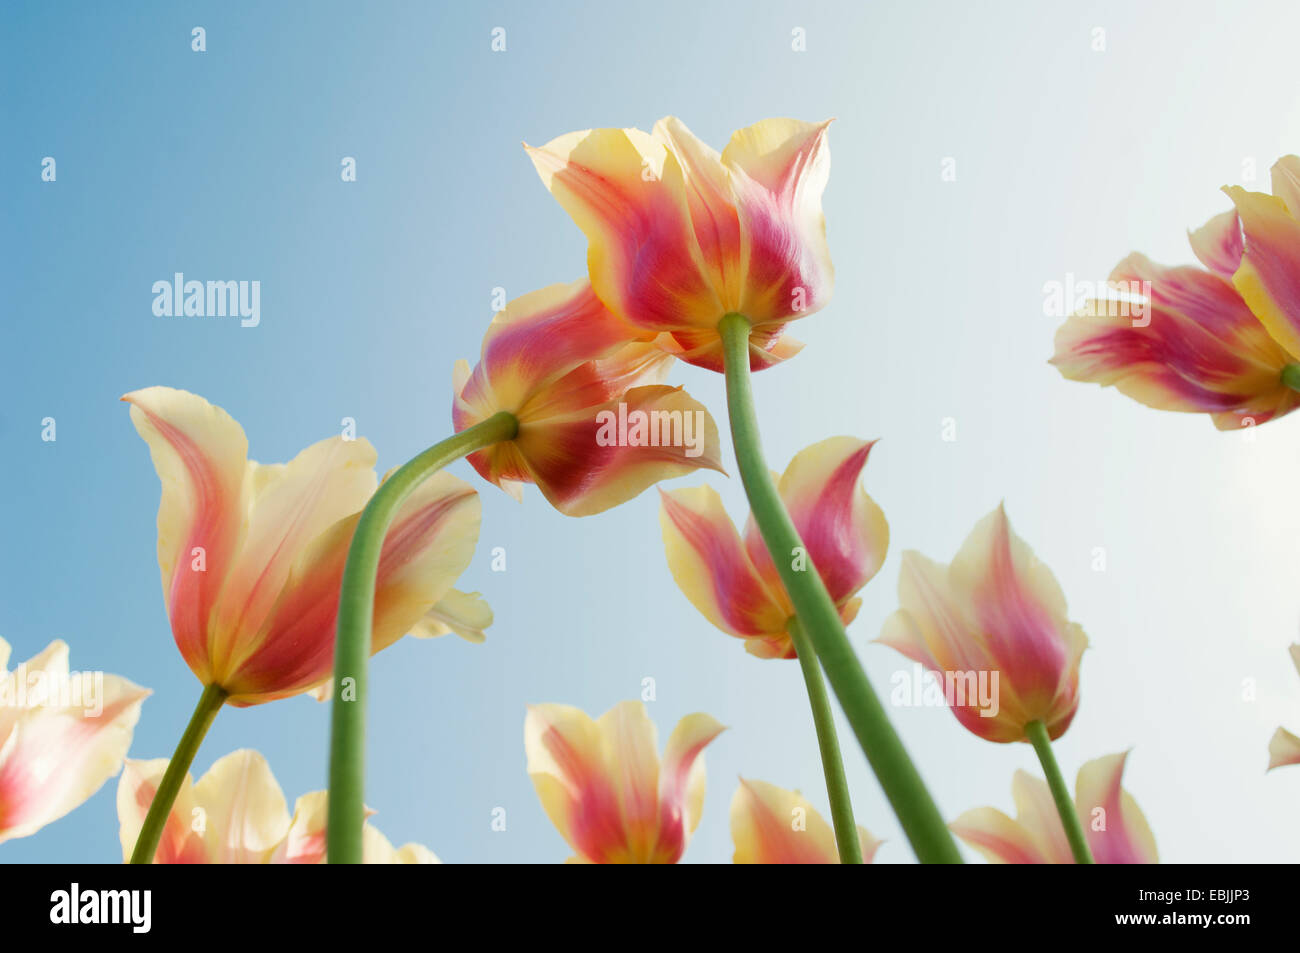 Basso angolo vista di rosa e gialli ombreggiati i tulipani Foto Stock